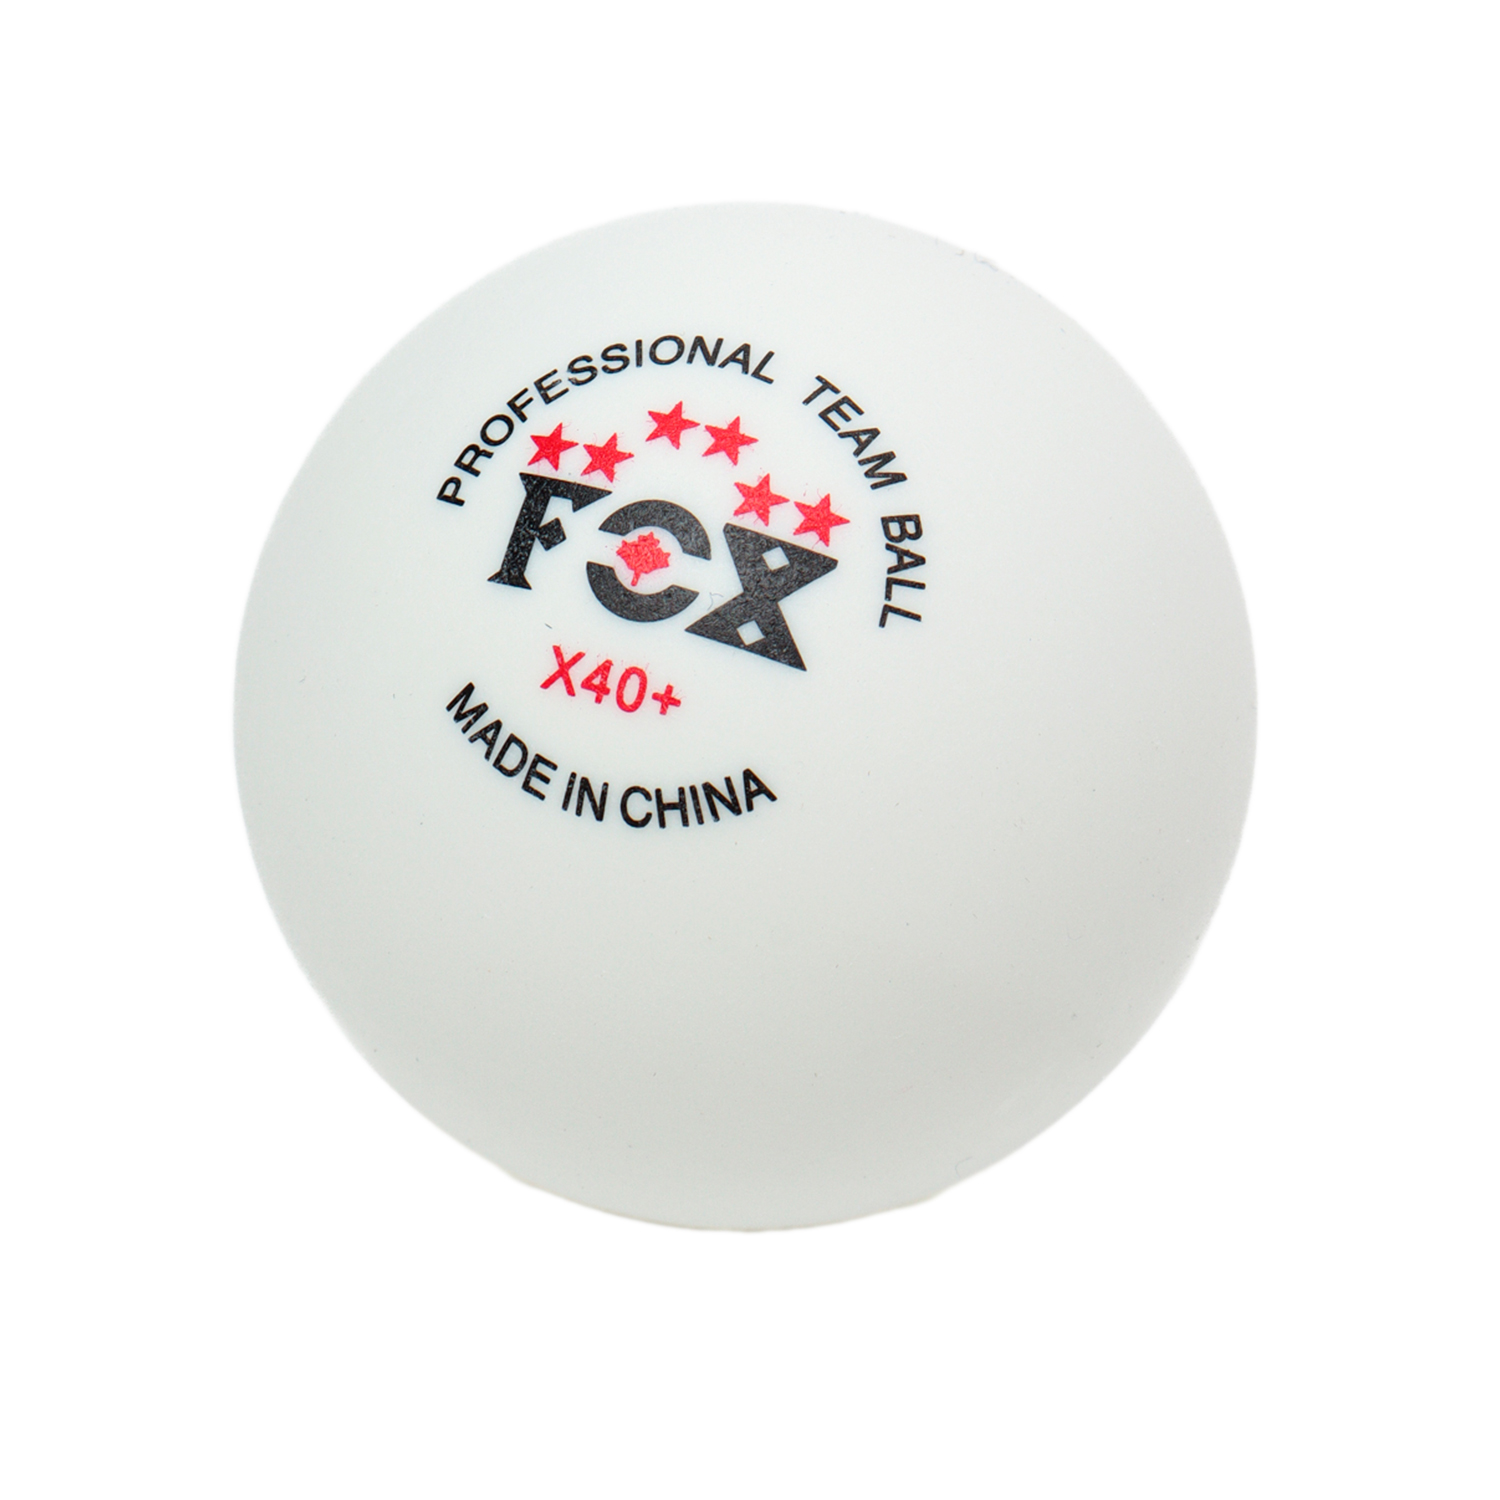 Мячи для настольного тенниса Fox X40+, 3шт